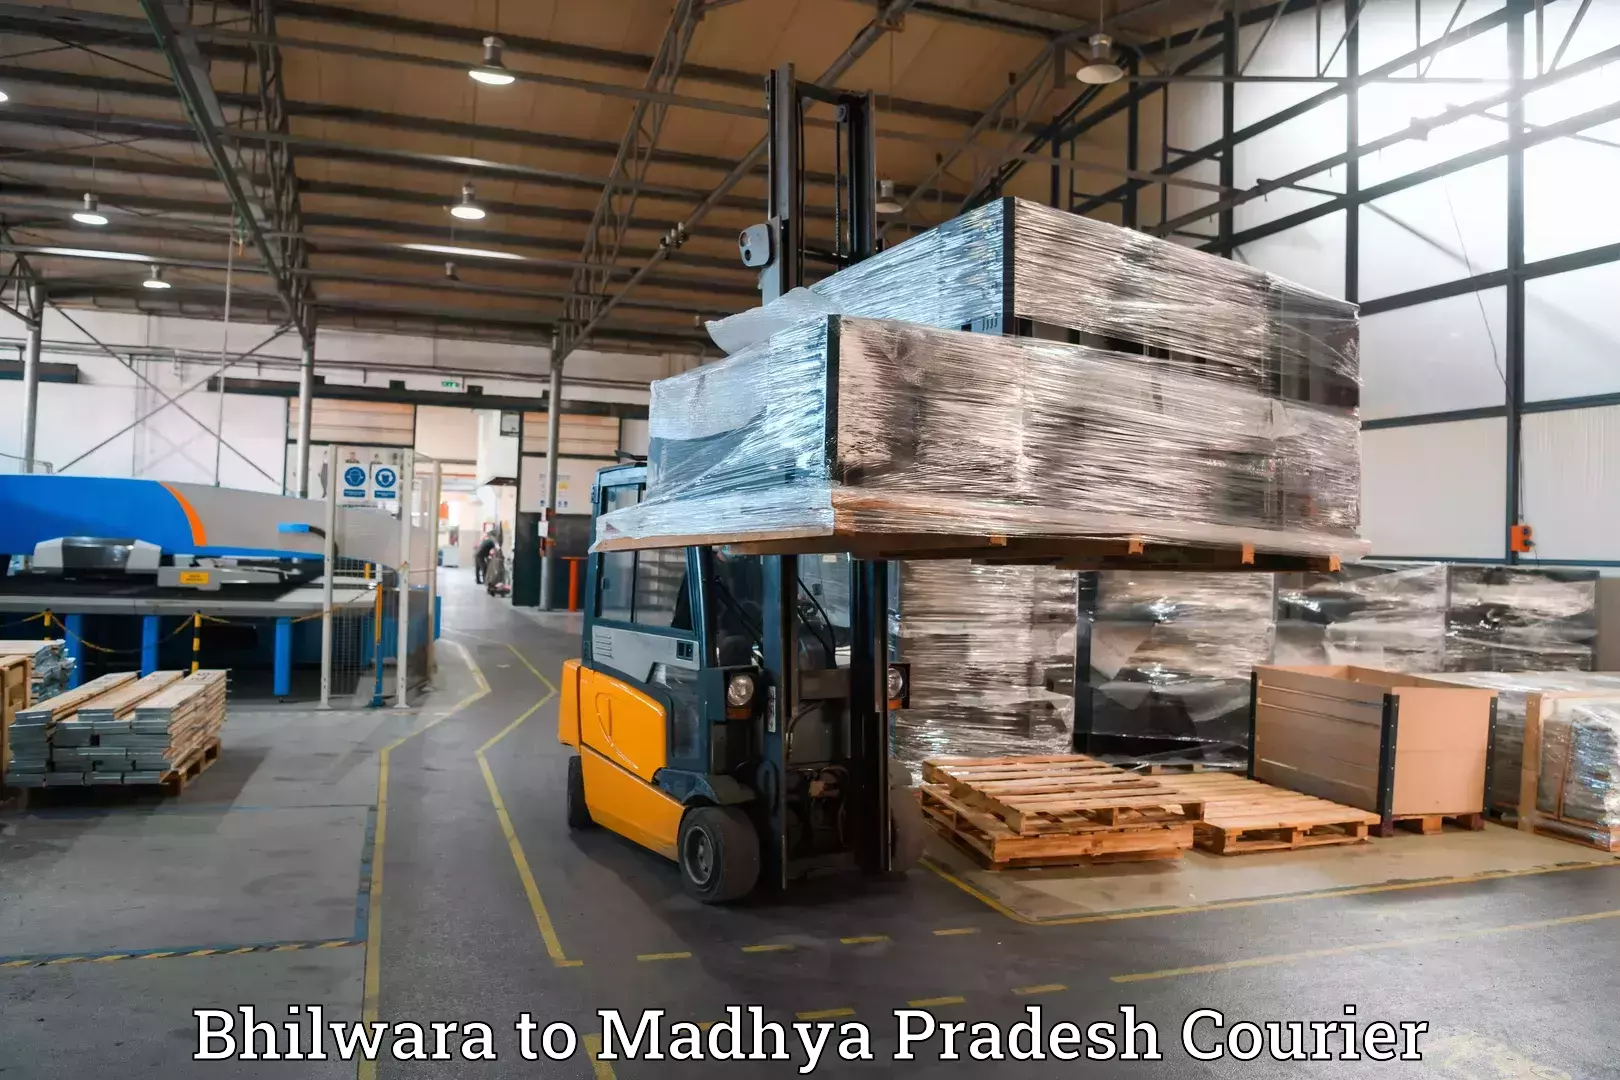 Luggage shipping guide Bhilwara to Amarkantak